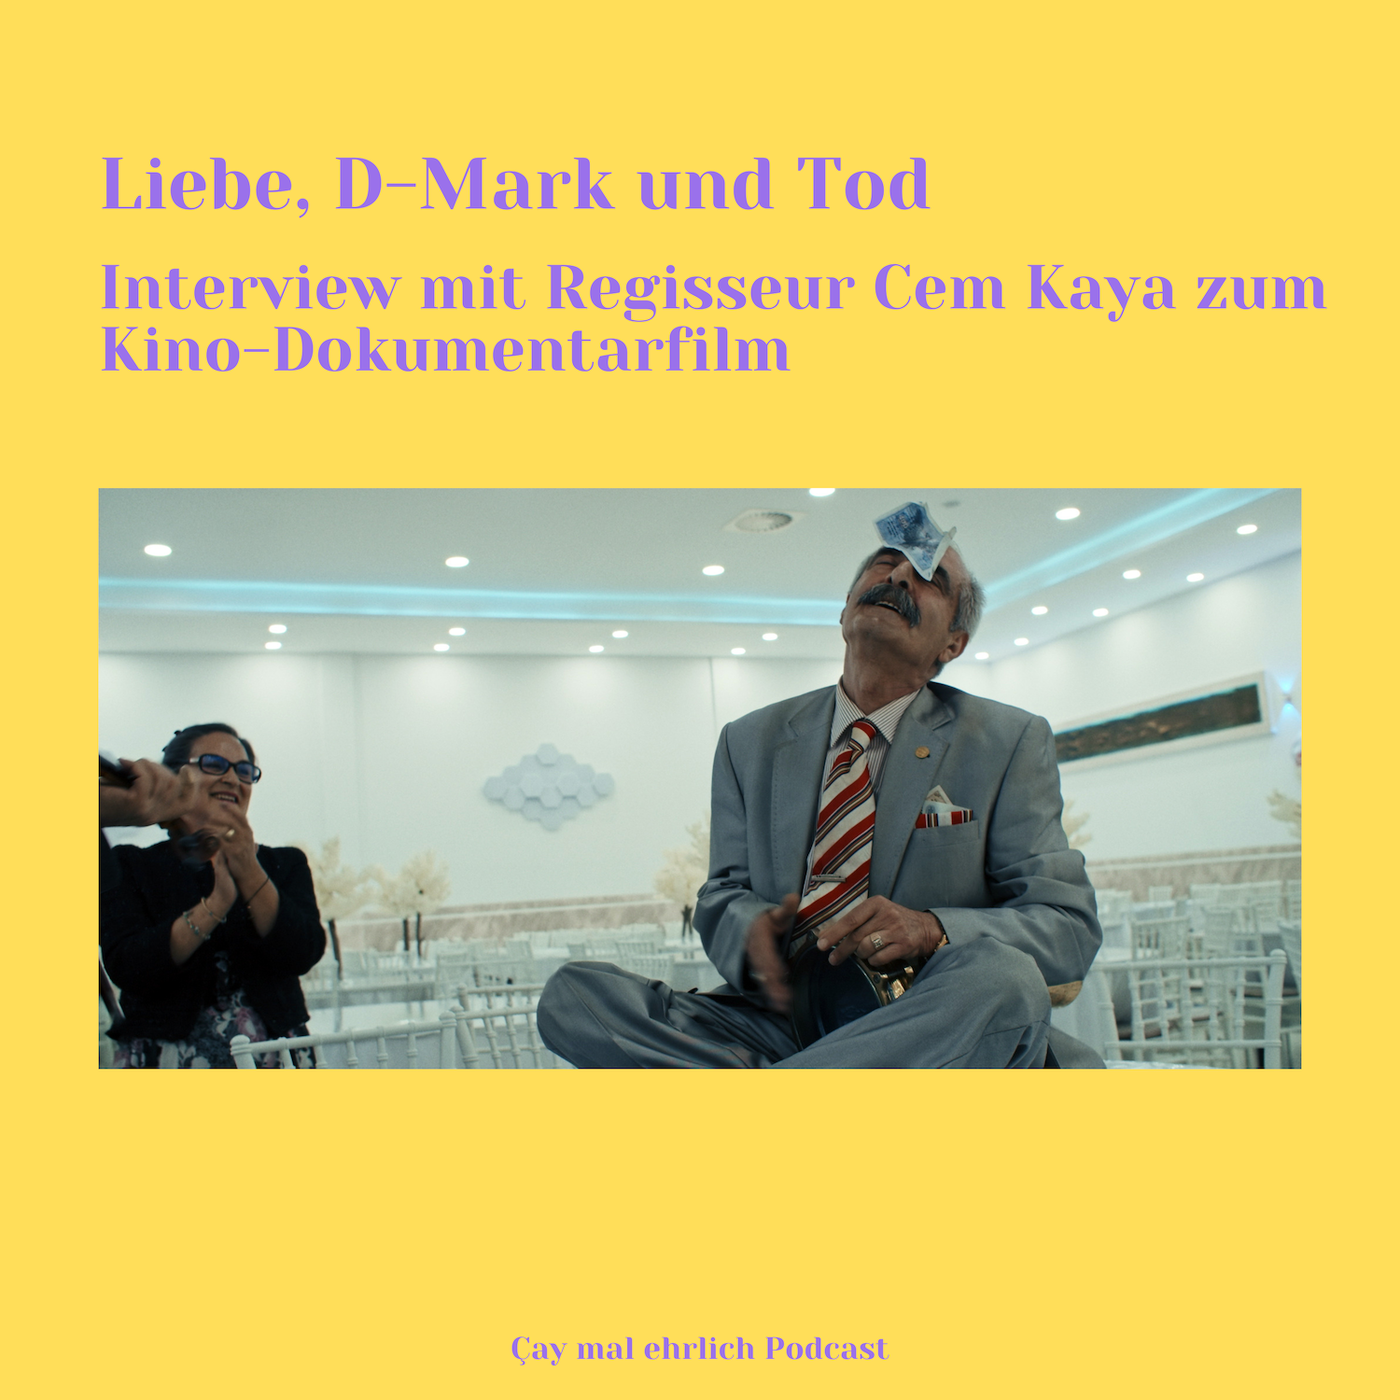 Liebe, D-Mark und Tod - Interview mit Regisseur Cem Kaya zum Kino-Dokumentarfilm